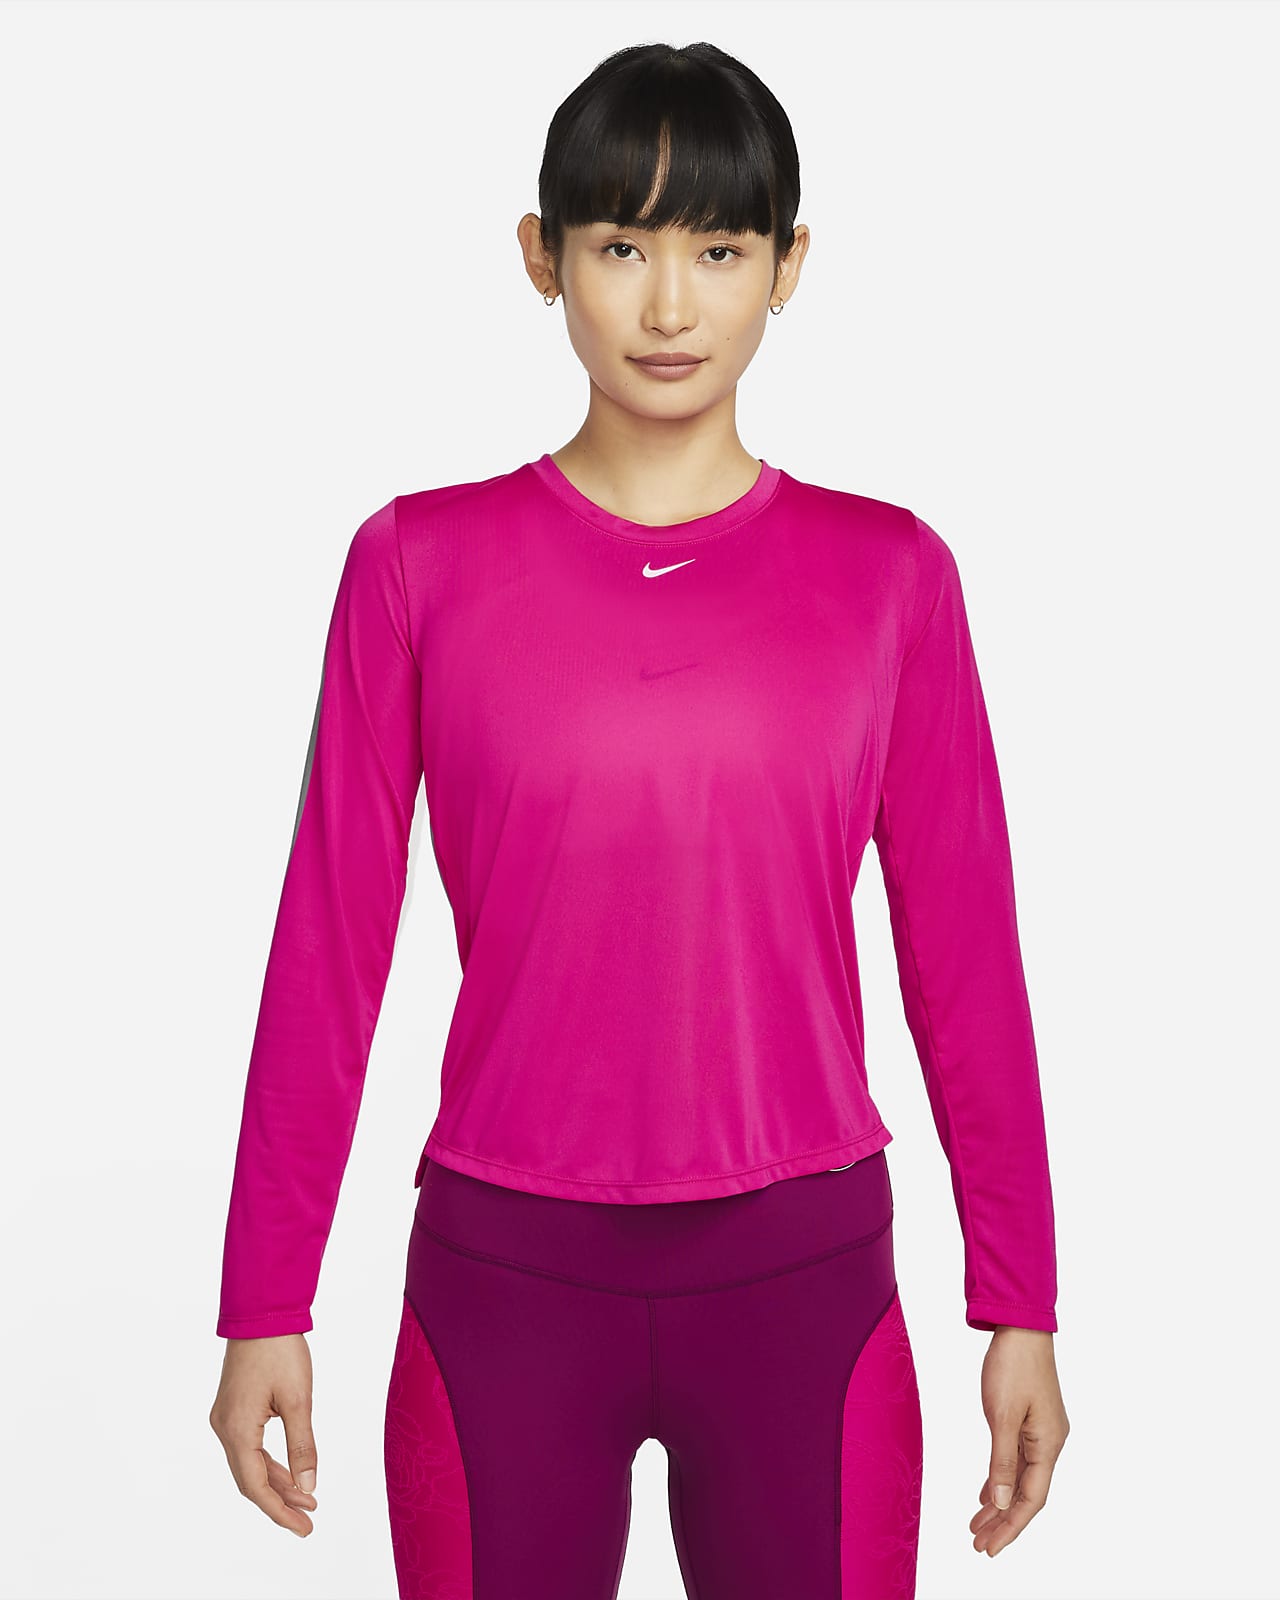 เสื้อผู้หญิงแขนยาวทรงมาตรฐาน Nike Dri-FIT One